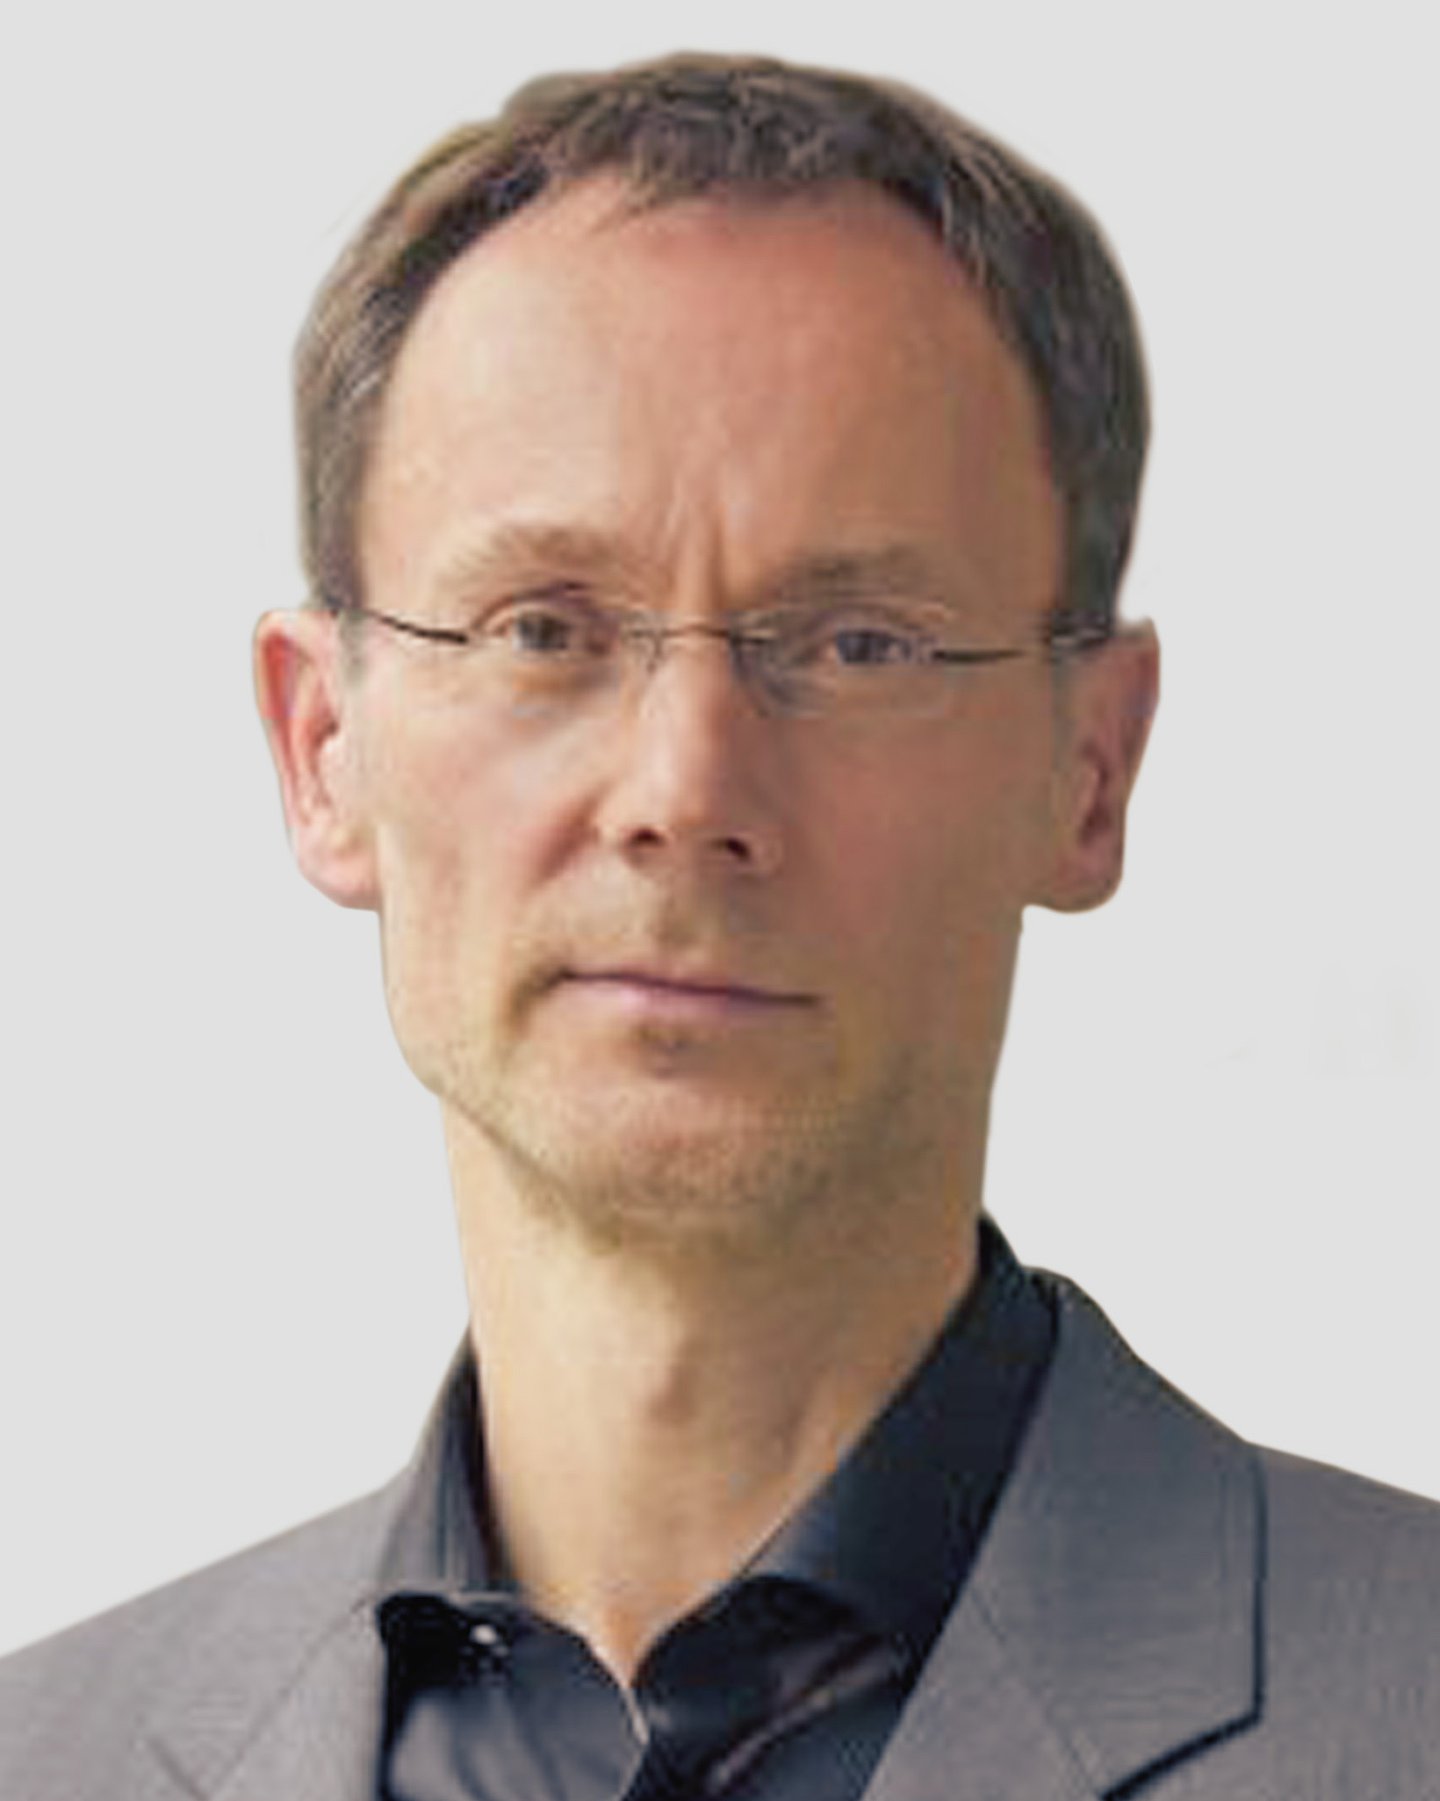 Porträt von Thomas Moormann, Verbraucherzentrale Bundesverband (vzbv)